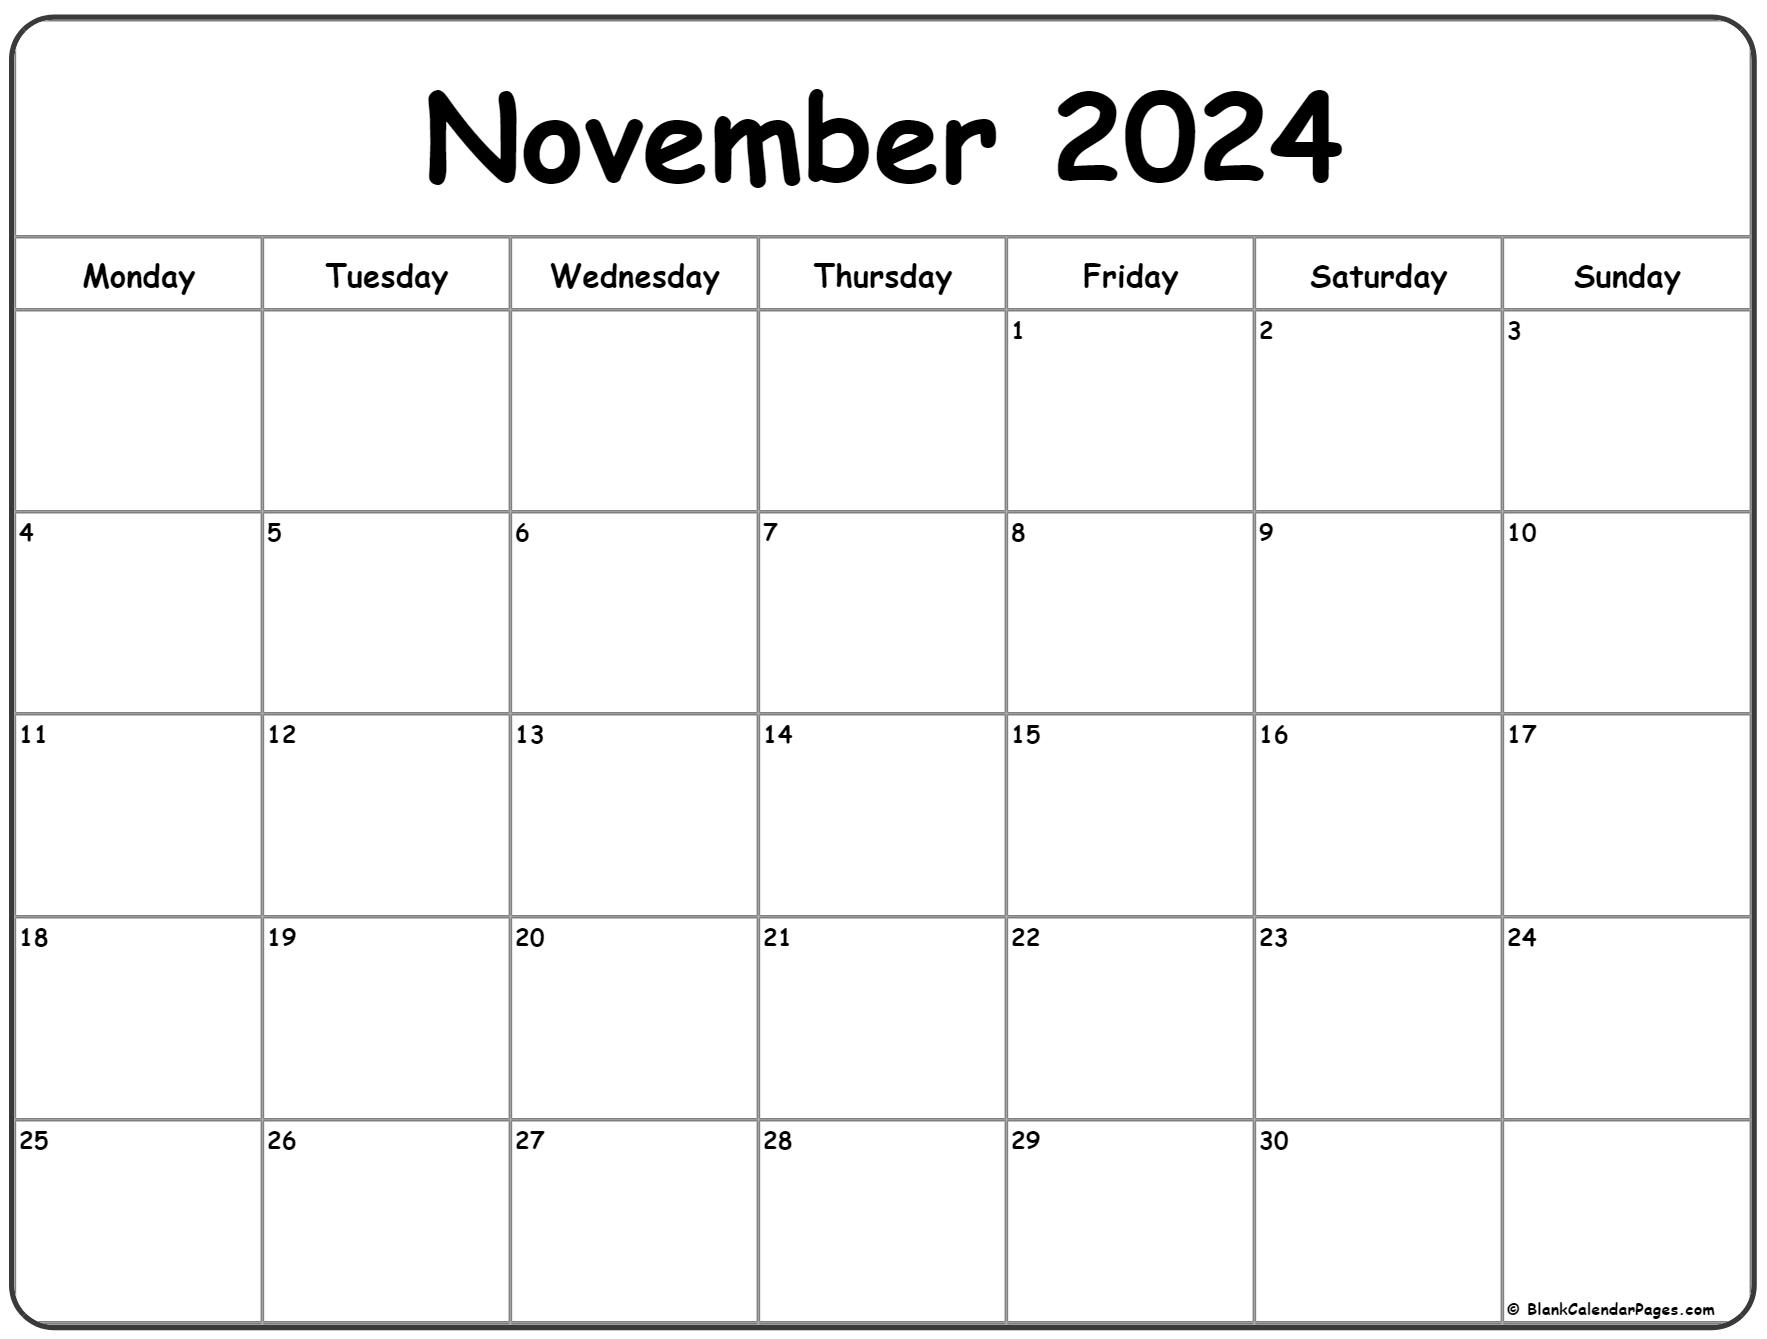 November 2024 Monday Calendar | Monday To Sunday for Printable Calendar November 2024